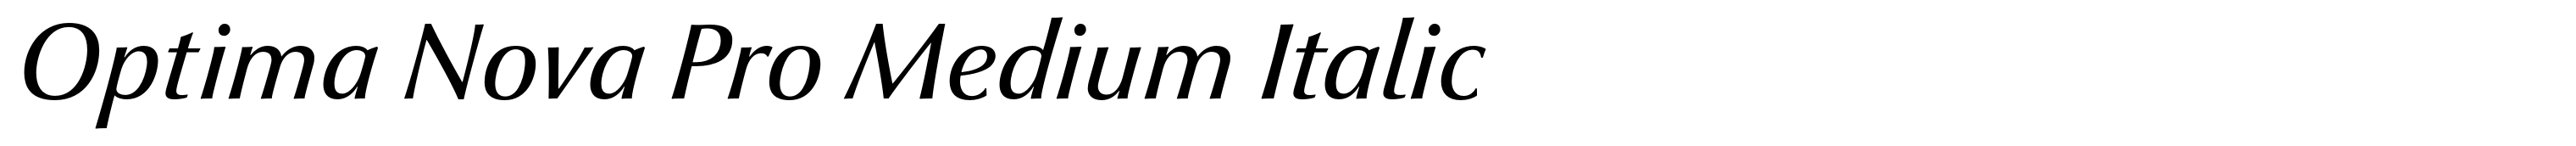 Optima Nova Pro Medium Italic